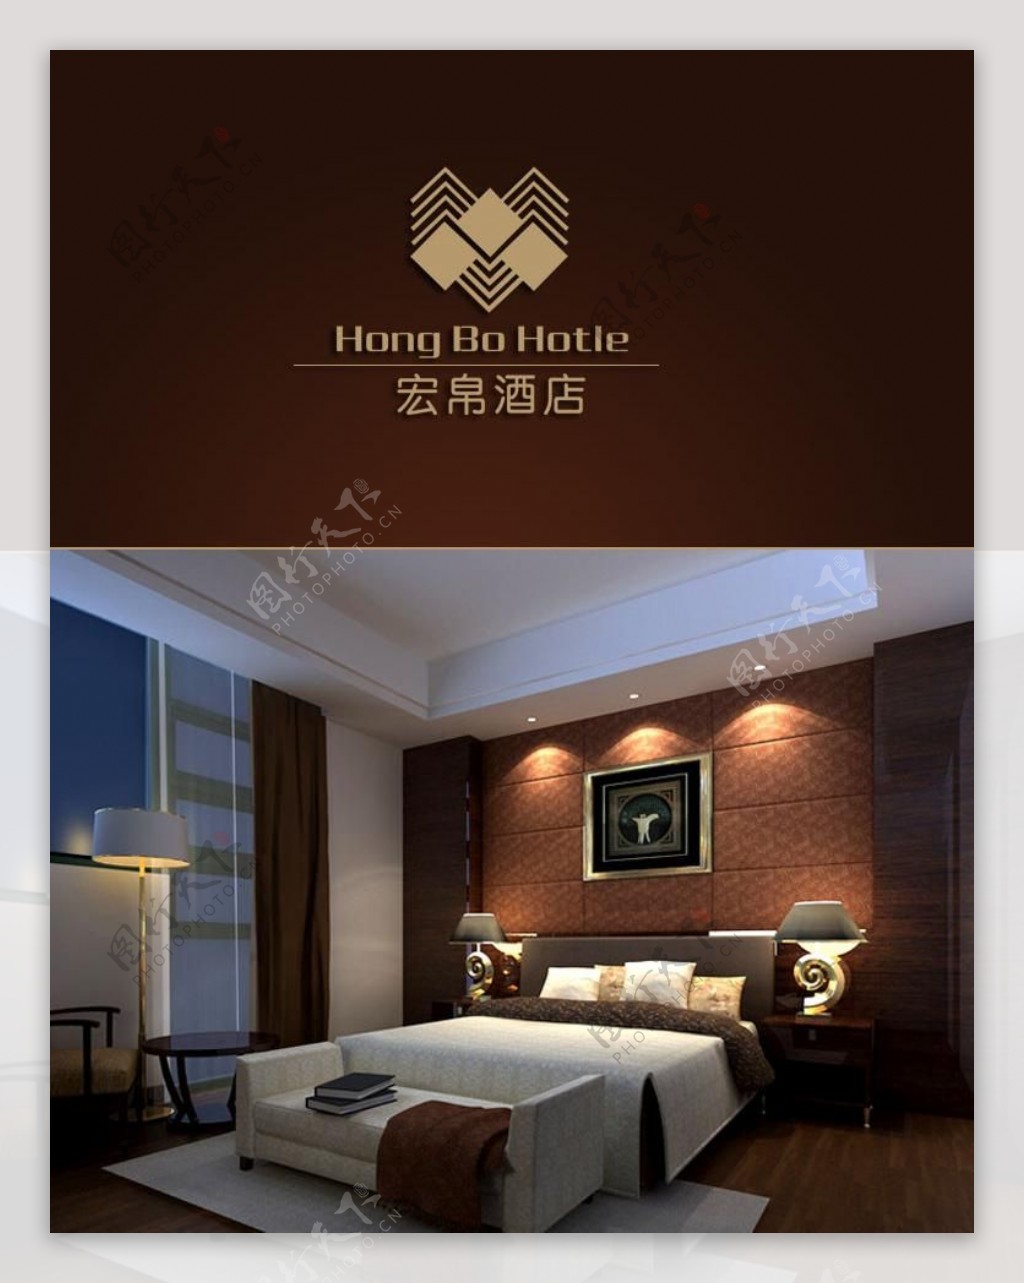 宏帛酒店logo图片